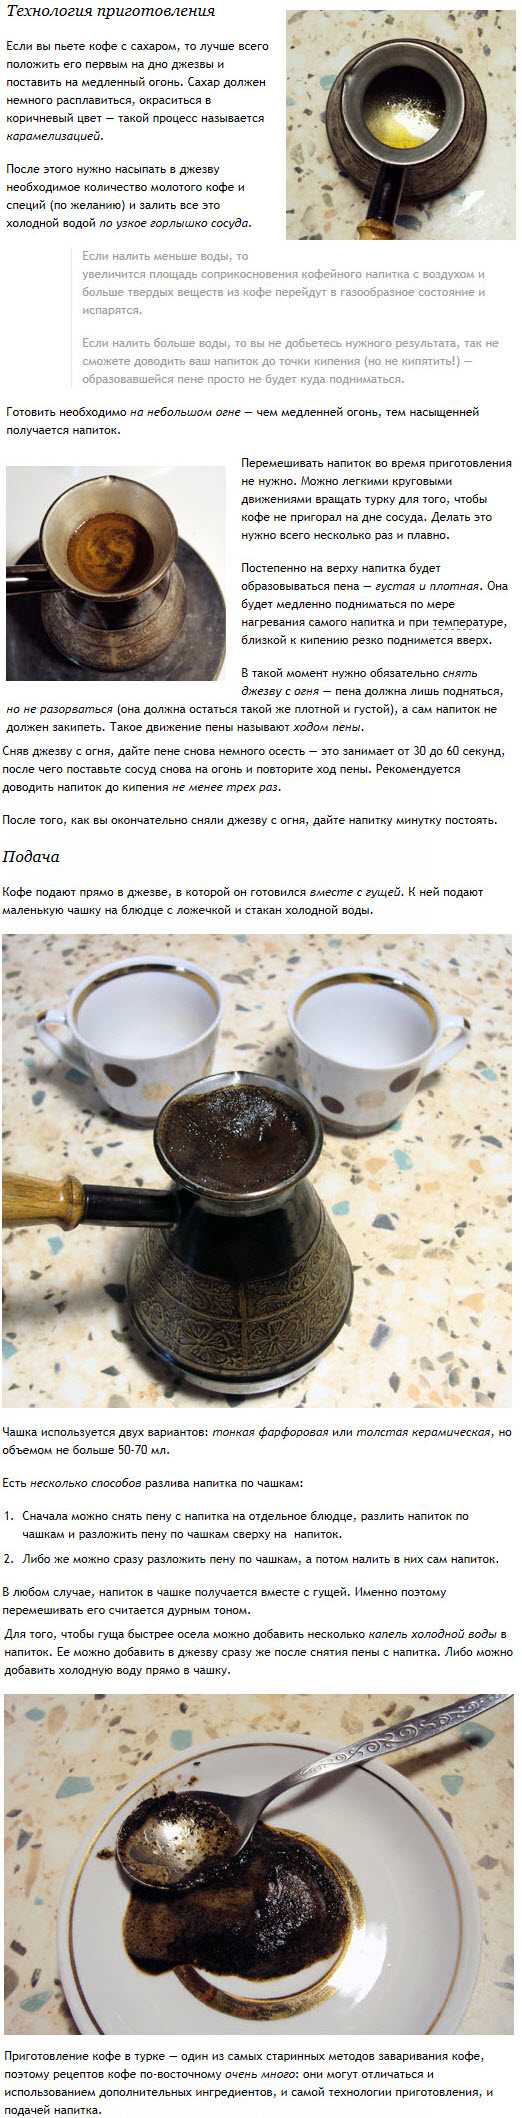 Сварить кофе пропорции. Правильные пропорции кофе и воды в турке. Пропорции для варки кофе в турке. Как готовить кофе в турке. Как варить кофе в турки.